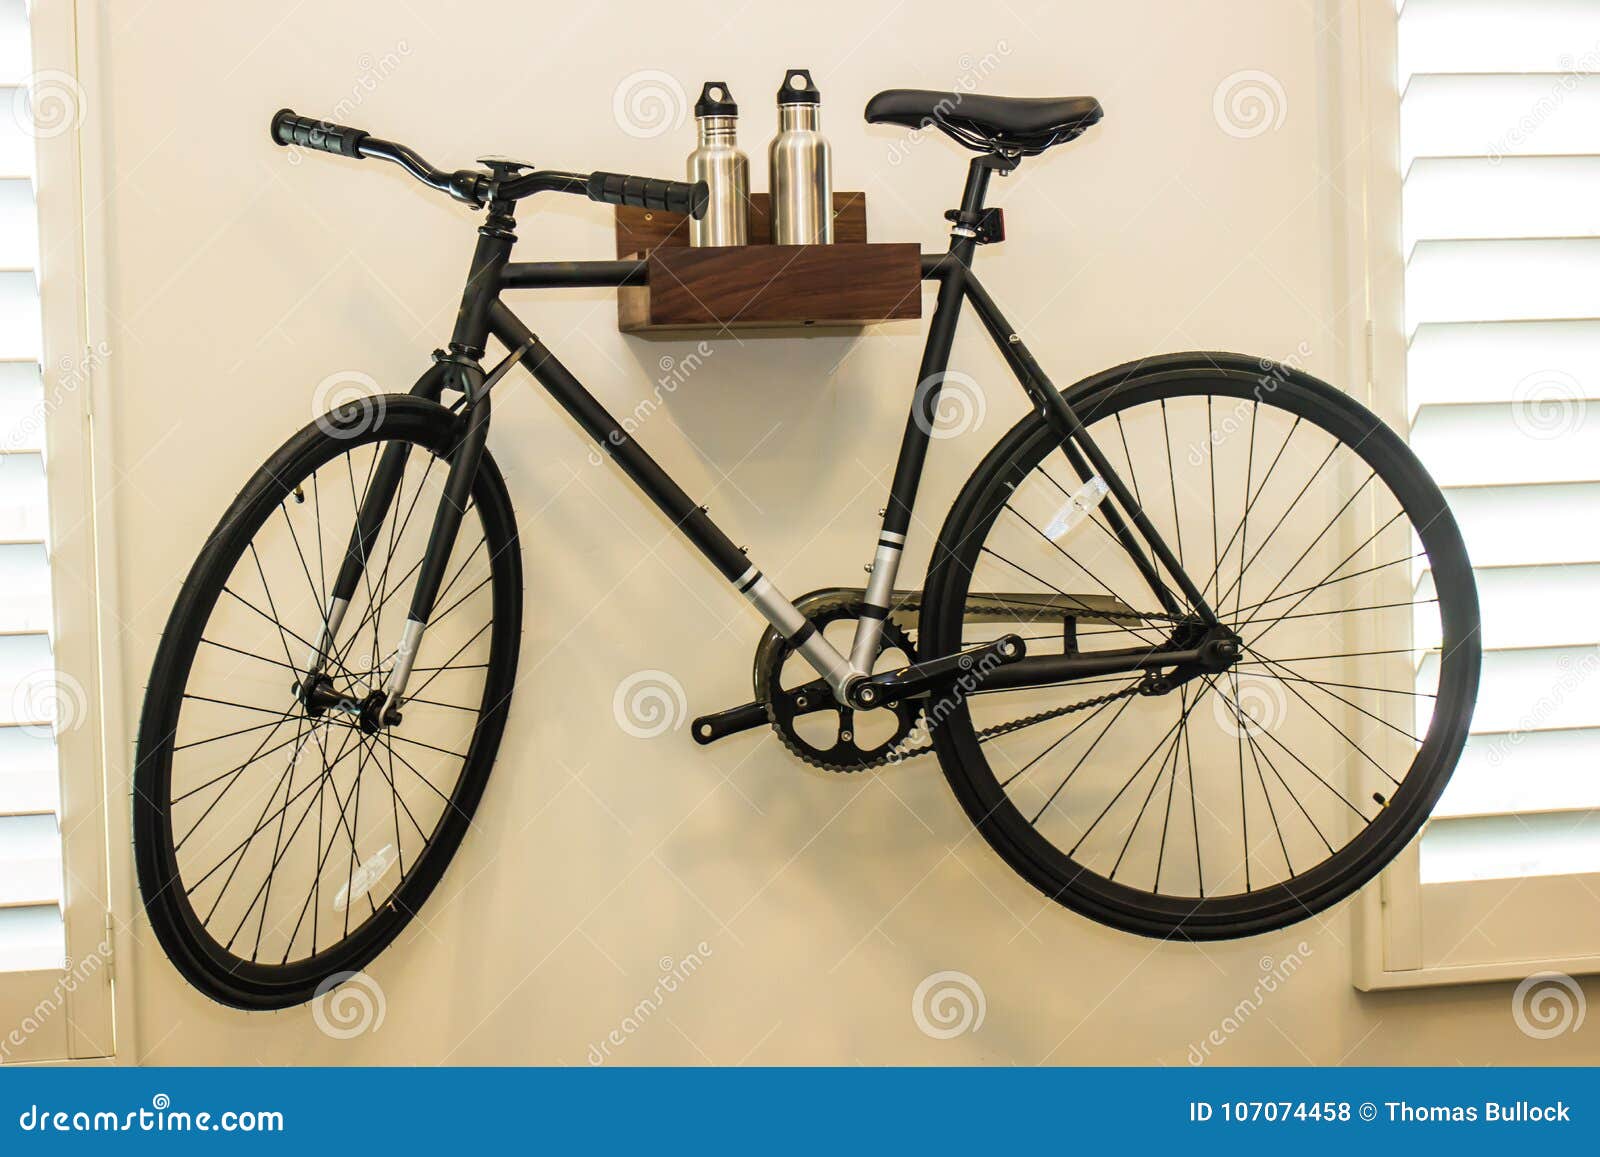 Ένωση ποδηλάτων από τον τοίχο. Διακοσμητικοί ποδήλατο, κάτοχος και μπουκάλια νερό που δίνουν στον τοίχο κρεβατοκάμαρων στο σύγχρονο σπίτι